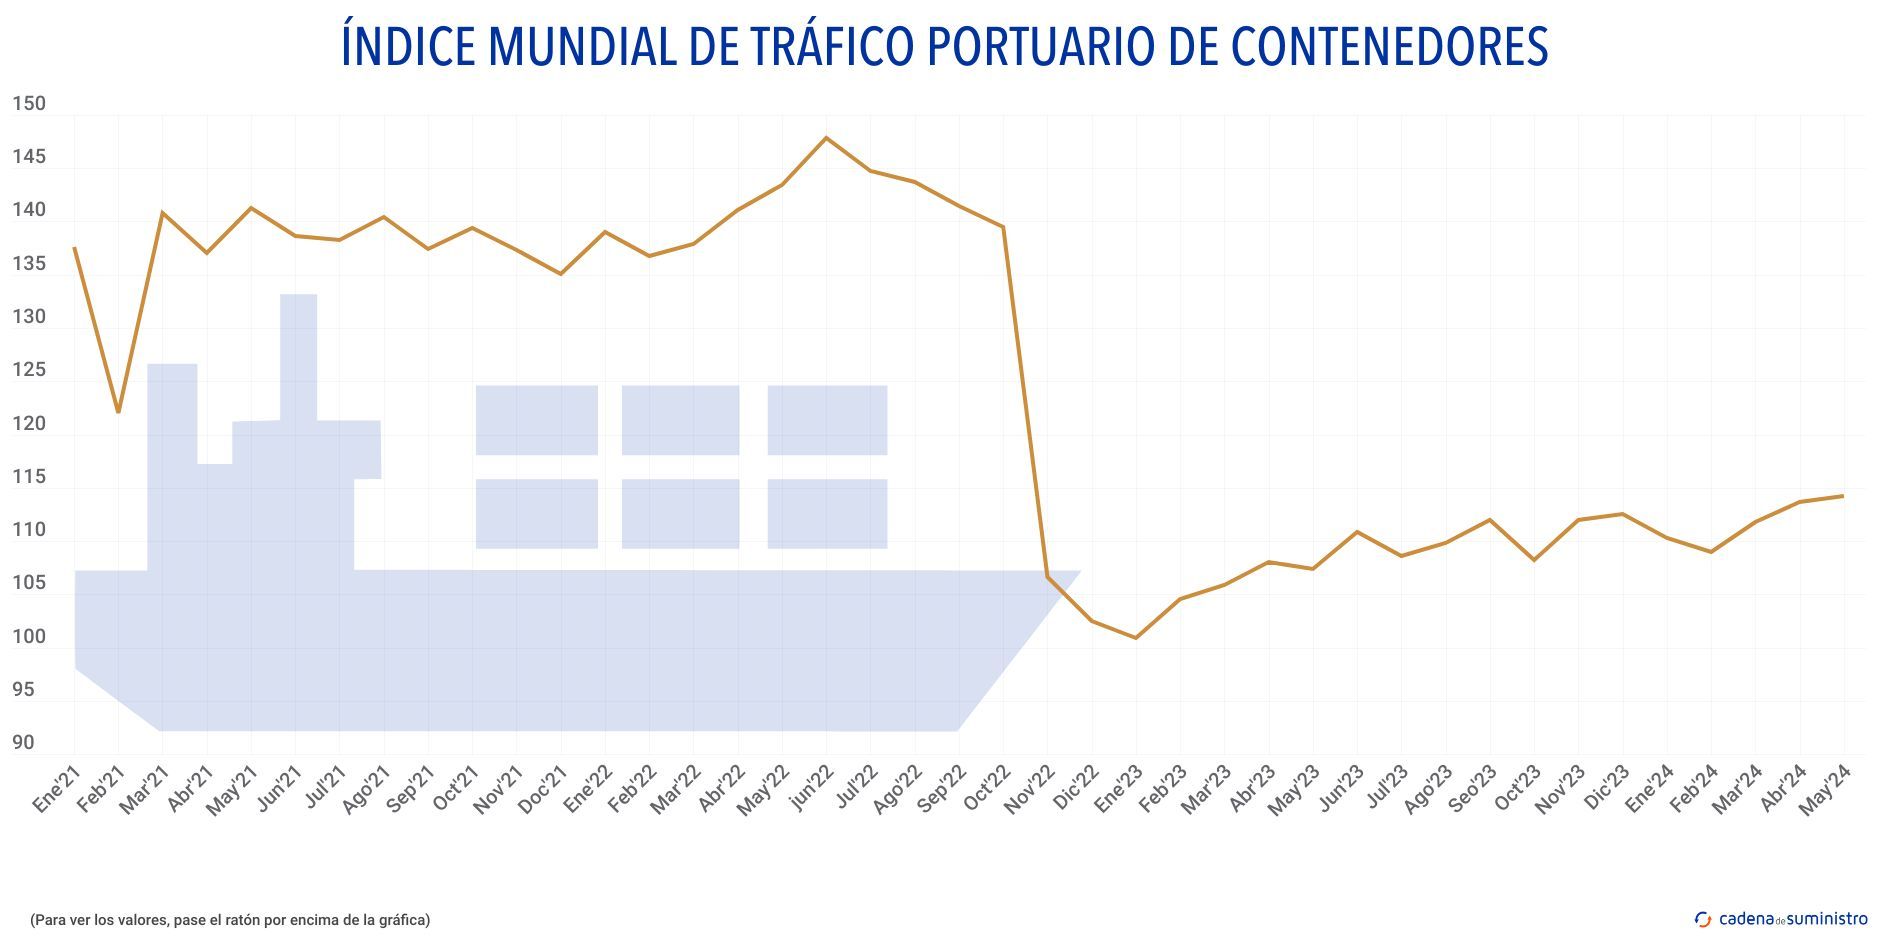 indice mundial de trafico portuario de contenedores